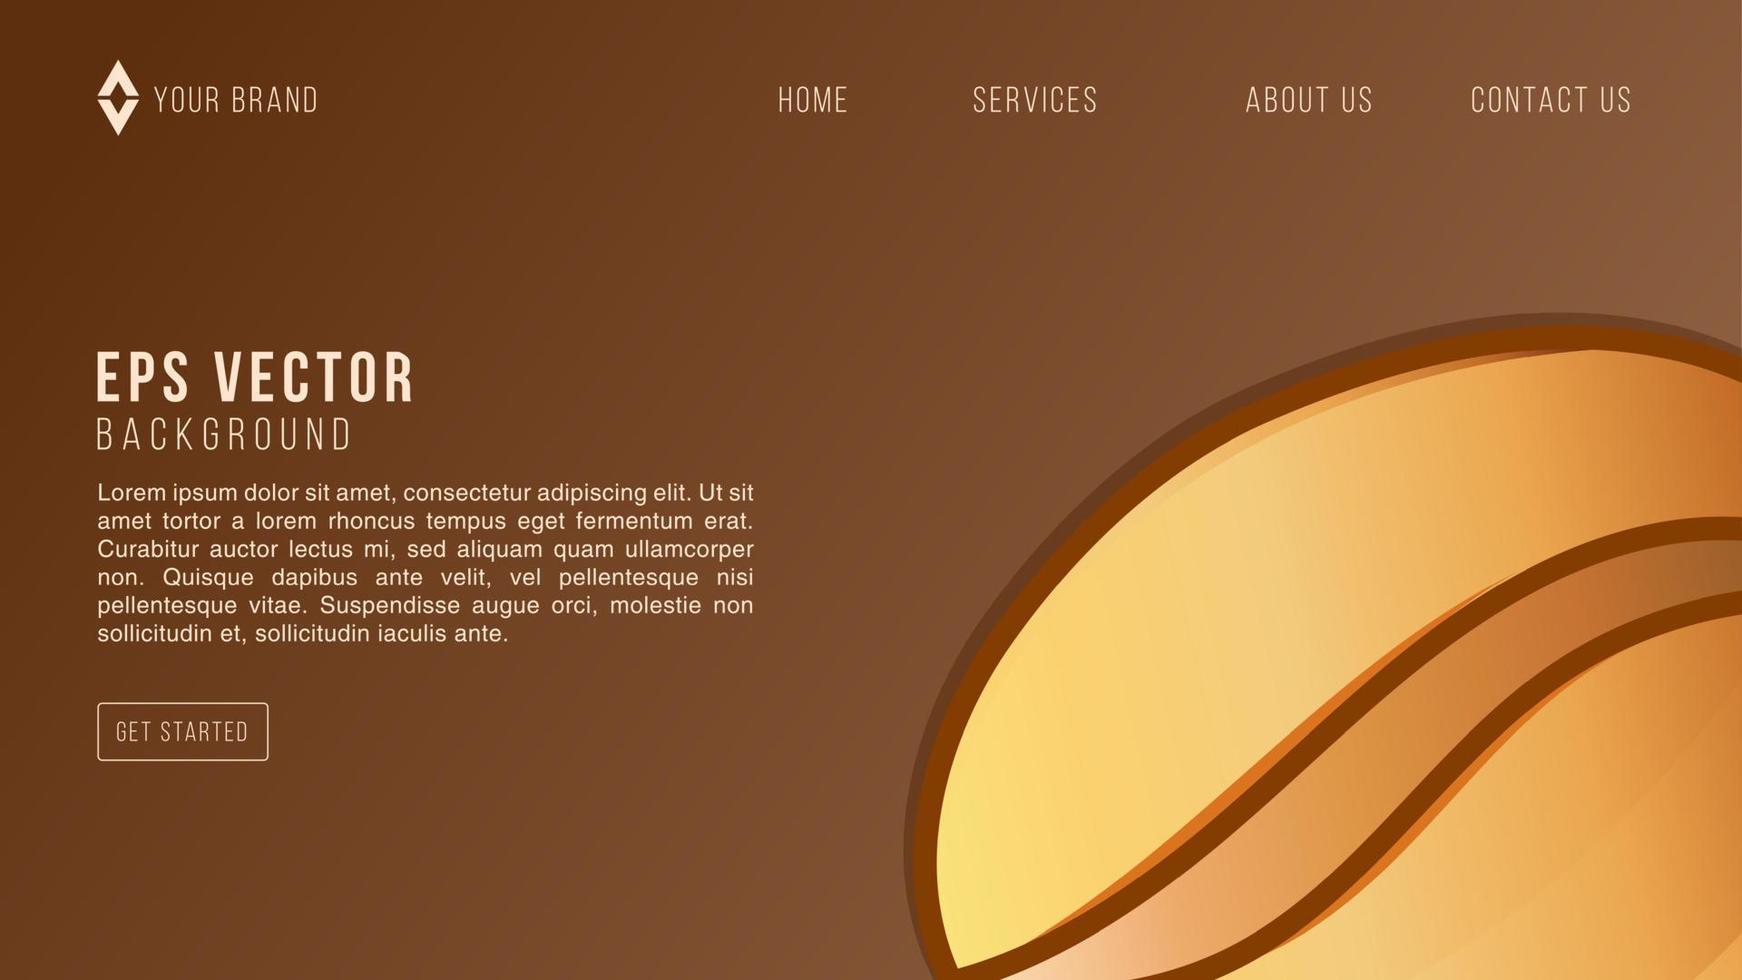 café marrón diseño web fondo abstracto limonada eps 10 vector para sitio web, página de inicio, página de inicio, página web, plantilla web